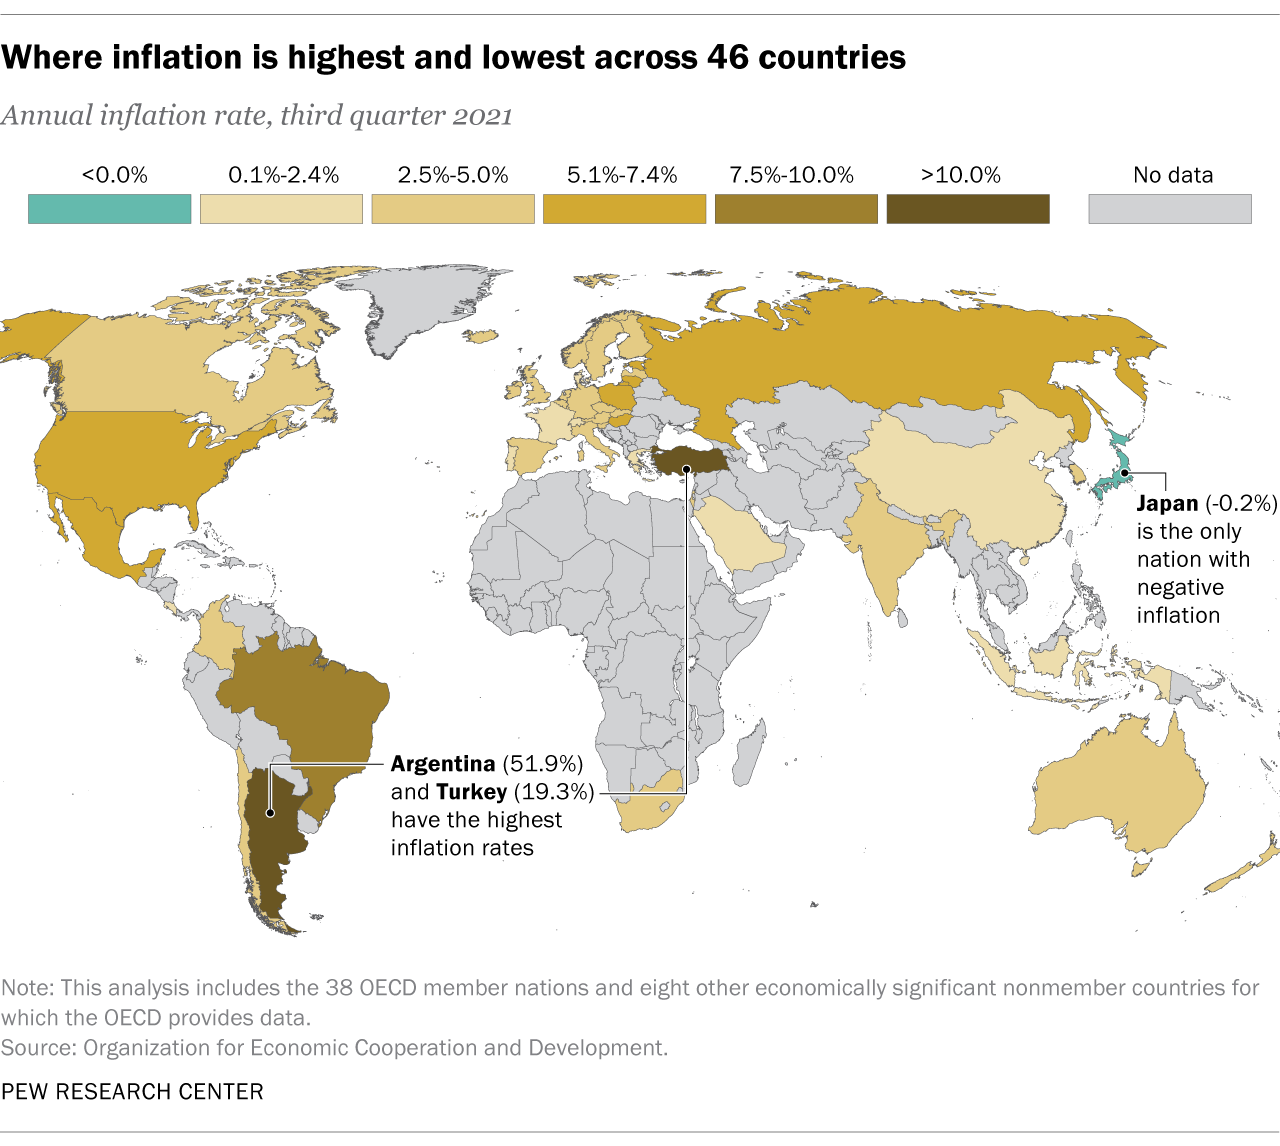  kartta, joka osoittaa, missä 46 maassa inflaatio on korkein ja alhaisin 